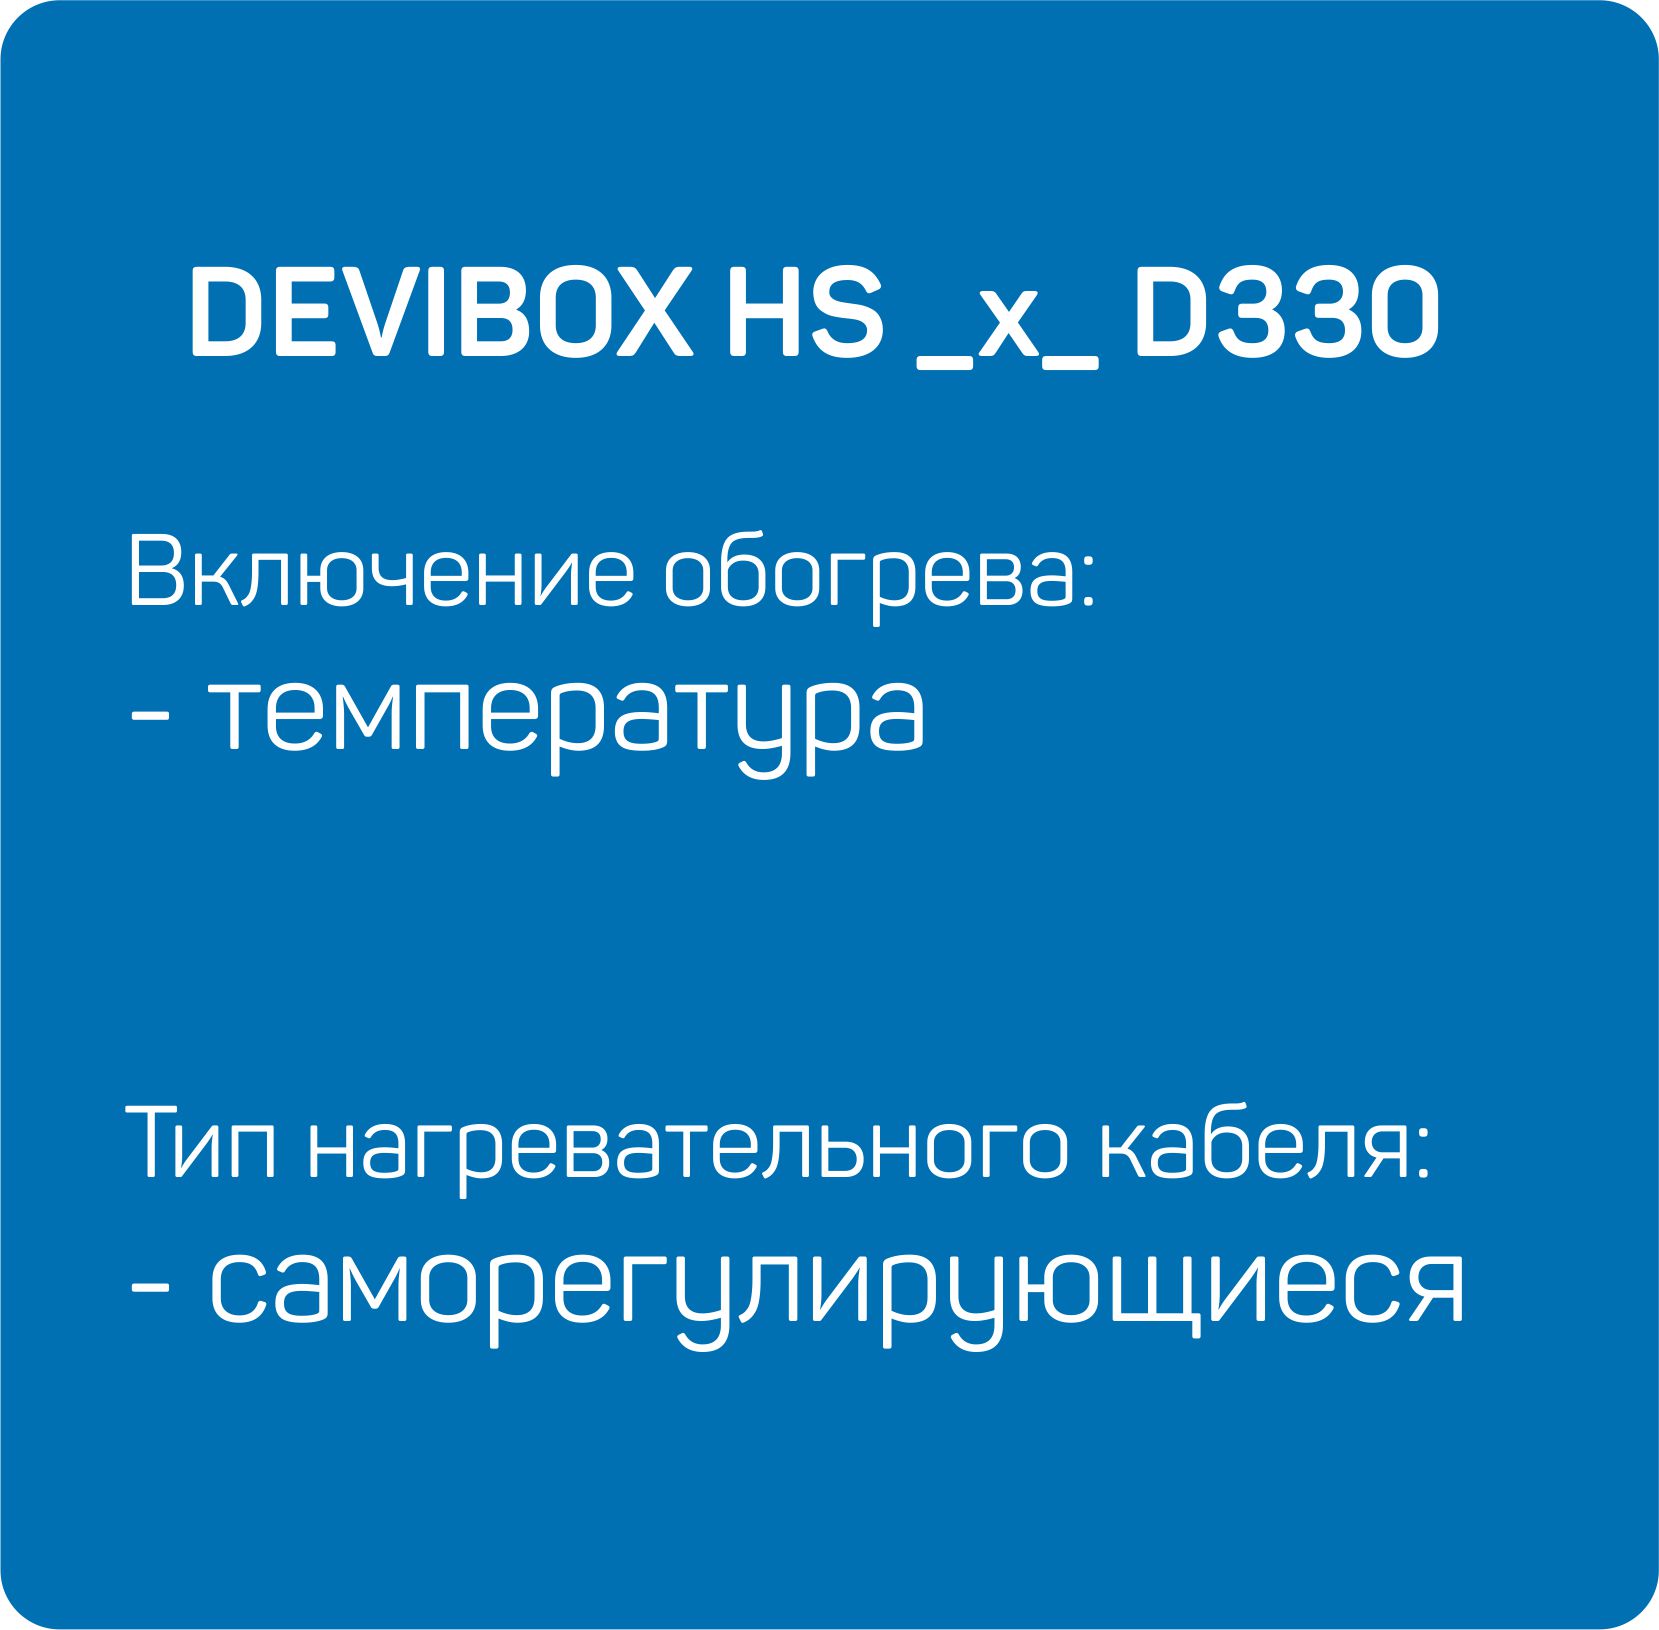 HS _x_ D330